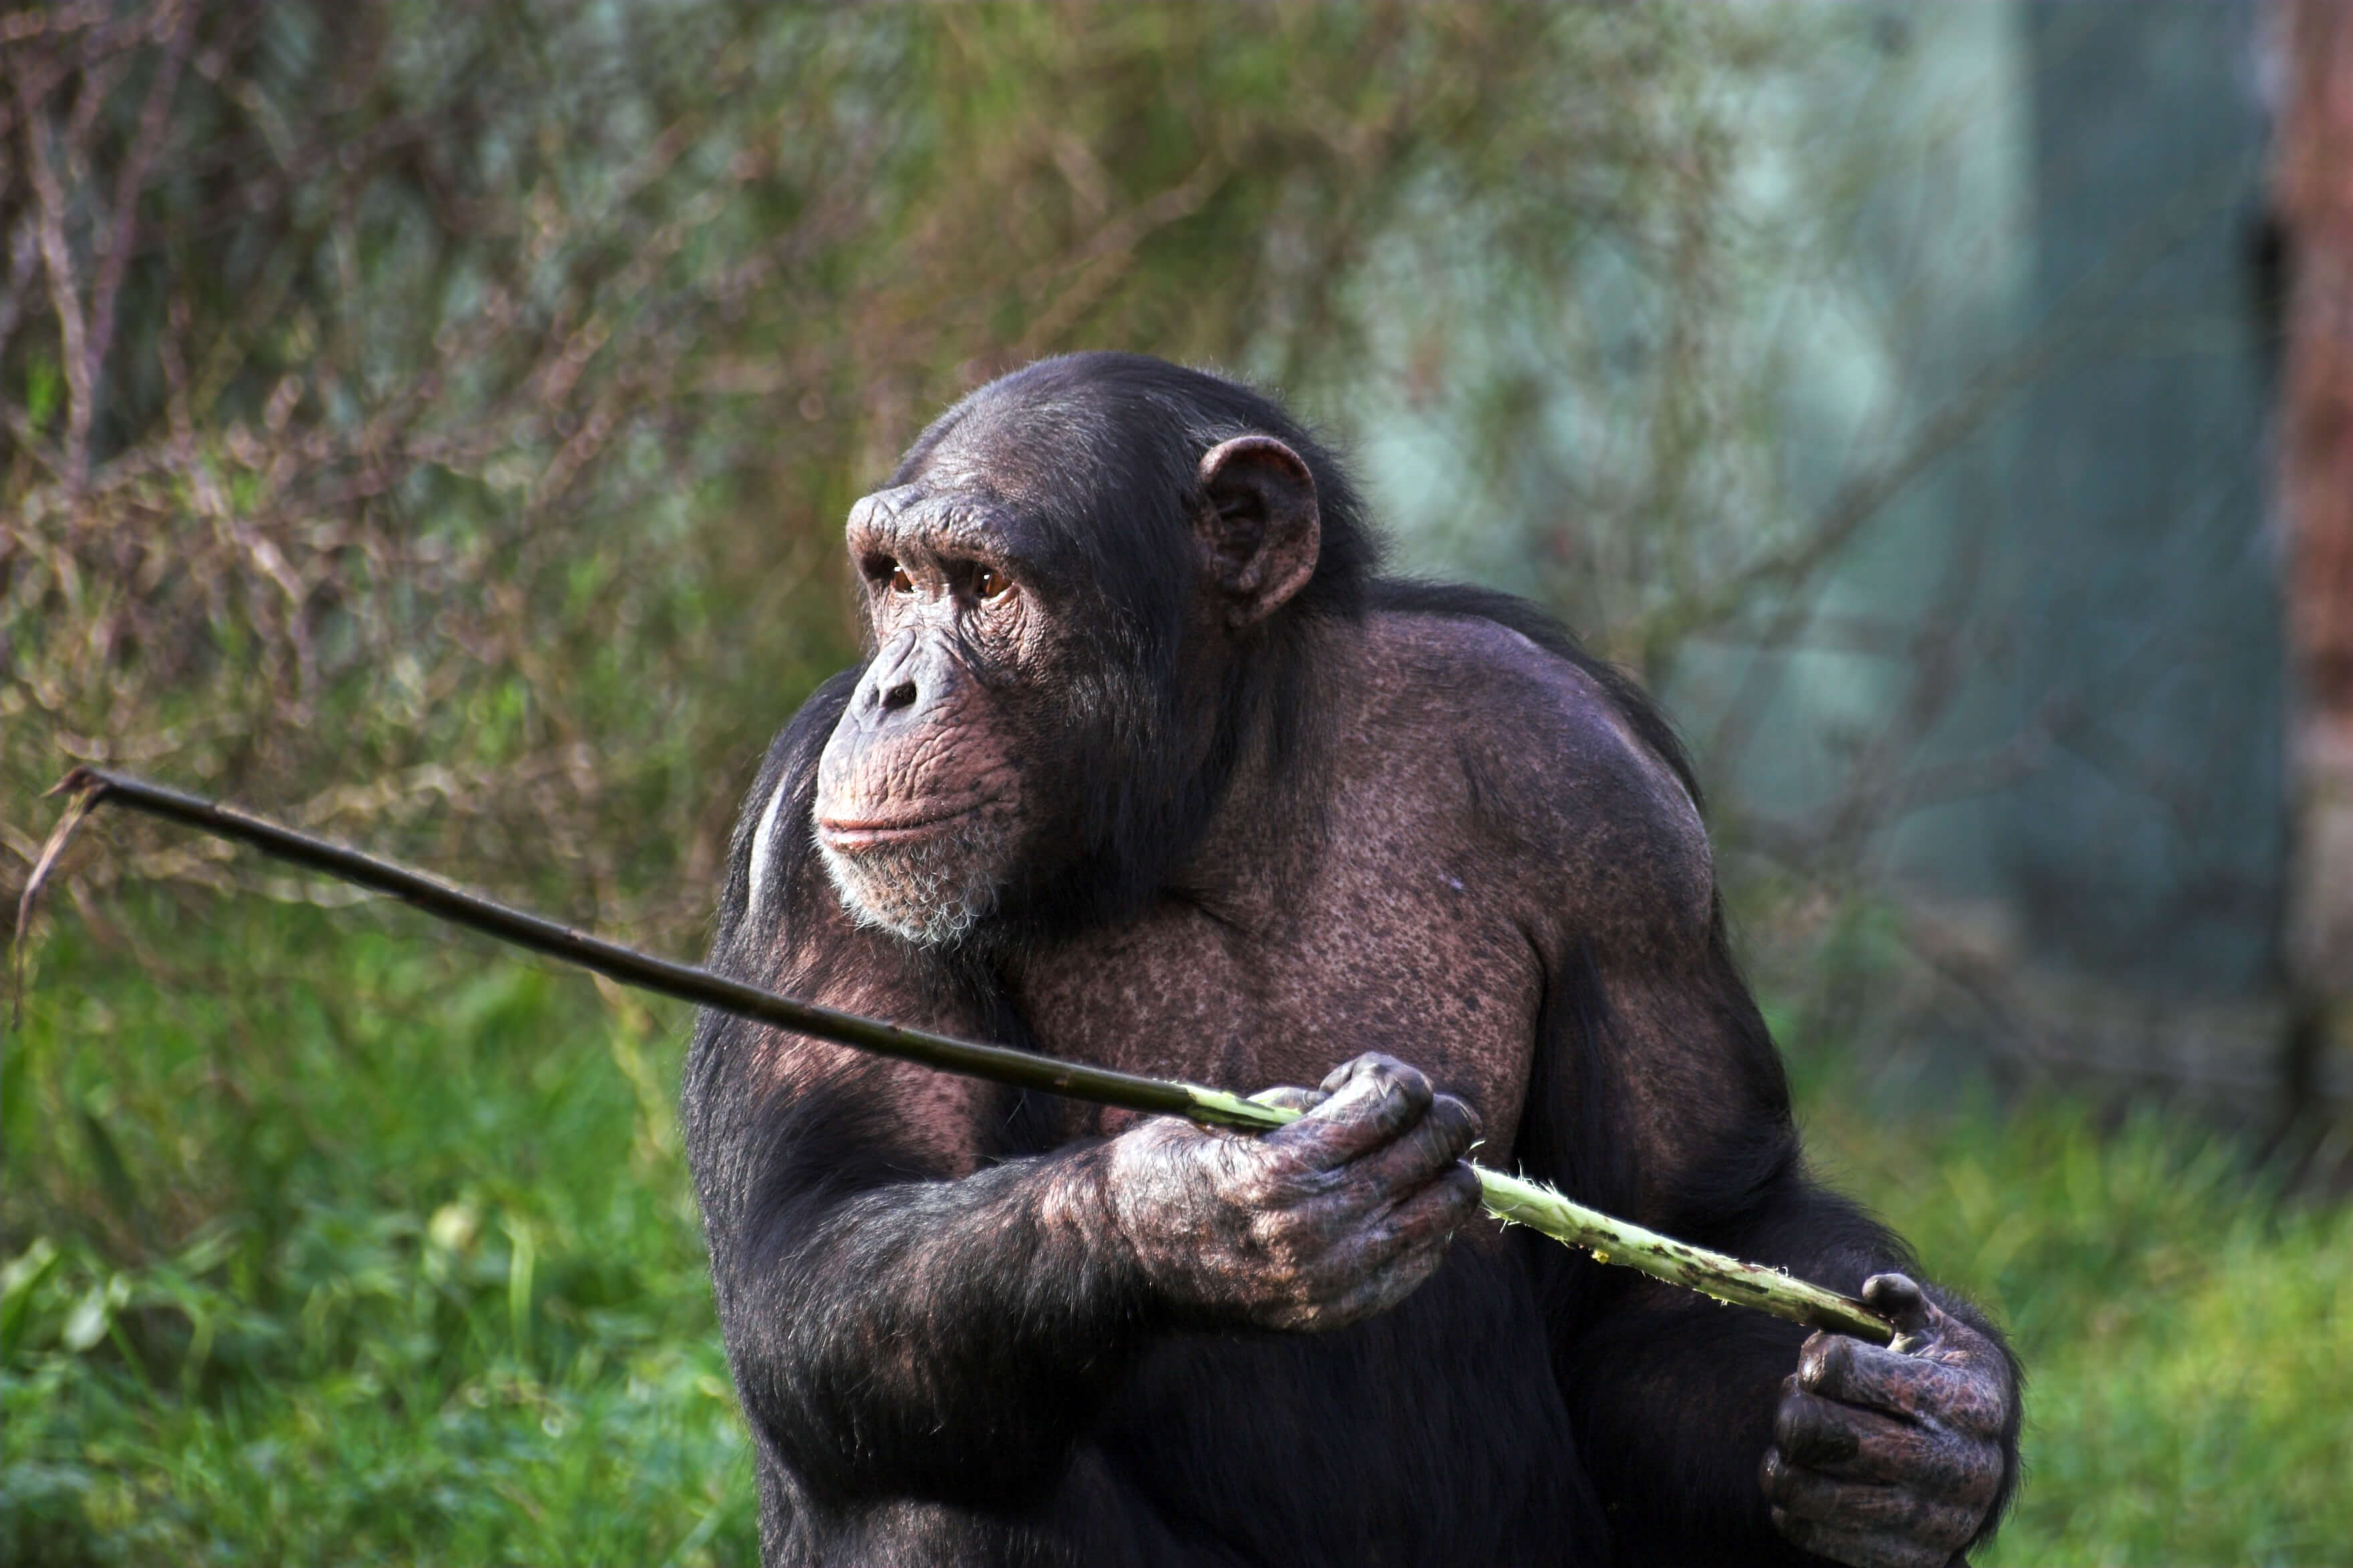 נקבת שימפנזה מחזיקה במקל. צילום: shutterstock